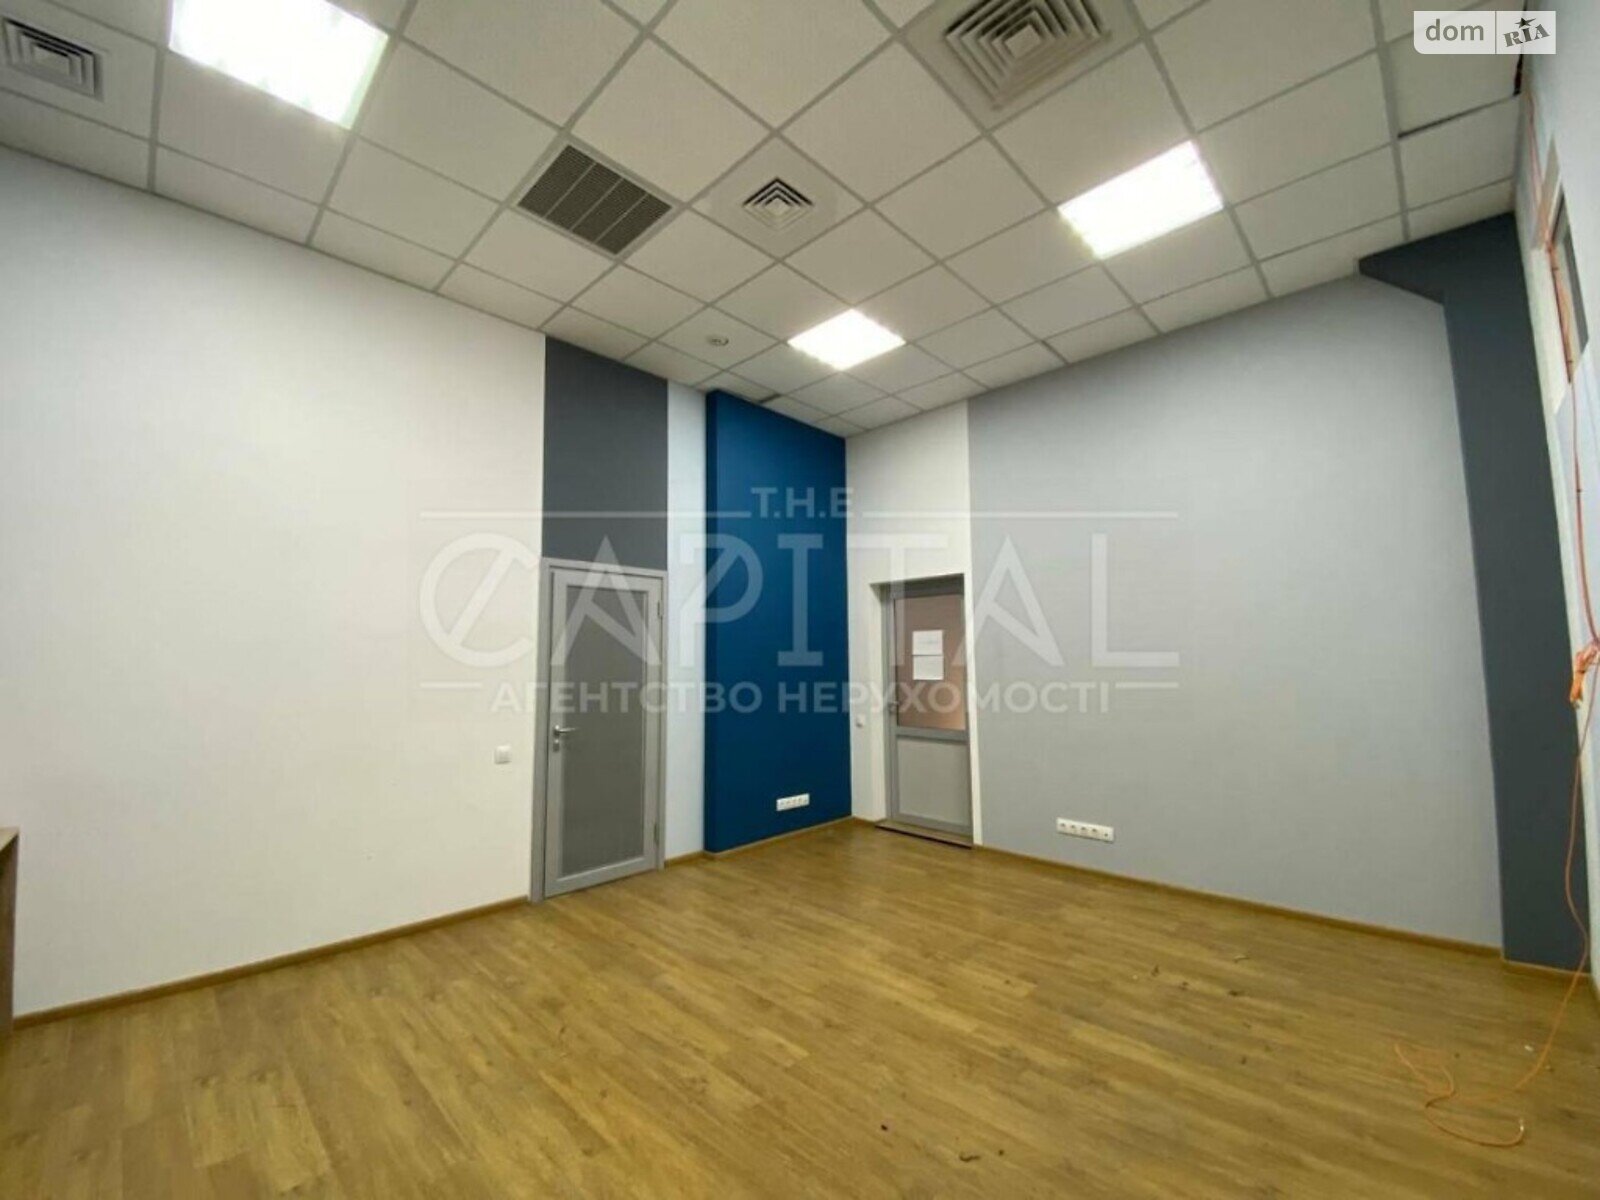 Аренда офисного помещения в Киеве, Васильковская улица 34, помещений - 23, этаж - 2 фото 1